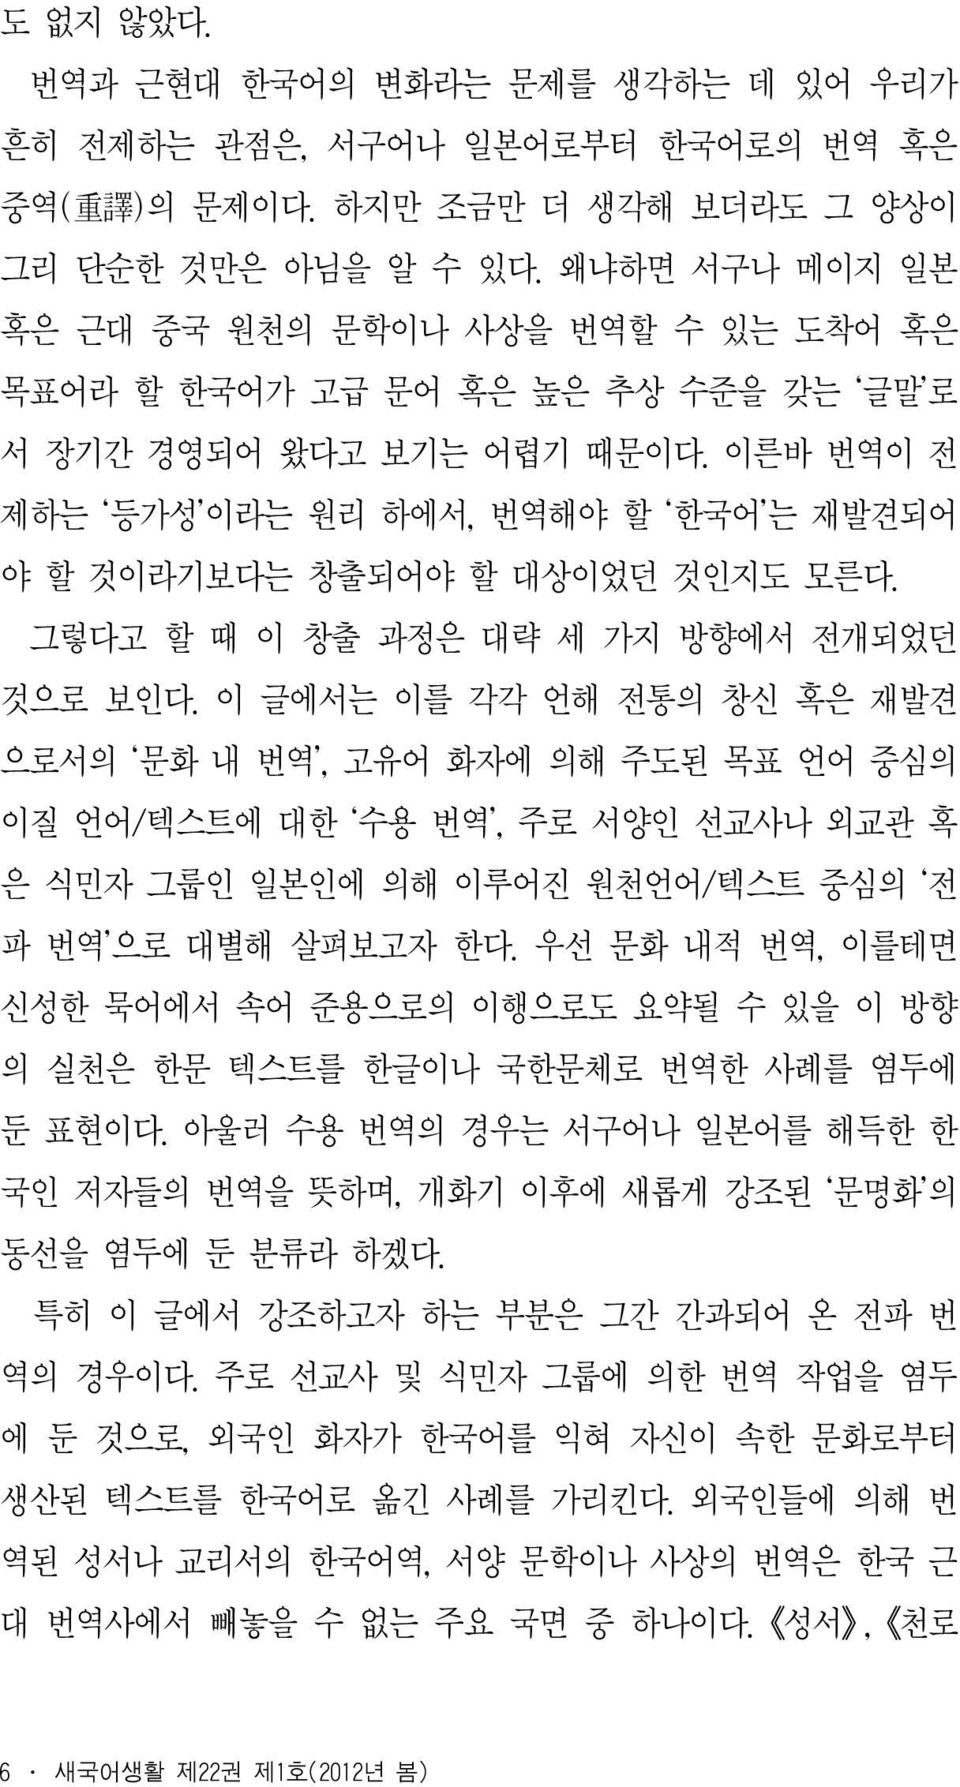 이른바 번역이 전 제하는 등가성 이라는 원리 하에서, 번역해야 할 한국어 는 재발견되어 야 할 것이라기보다는 창출되어야 할 대상이었던 것인지도 모른다. 그렇다고 할 때 이 창출 과정은 대략 세 가지 방향에서 전개되었던 것으로 보인다.